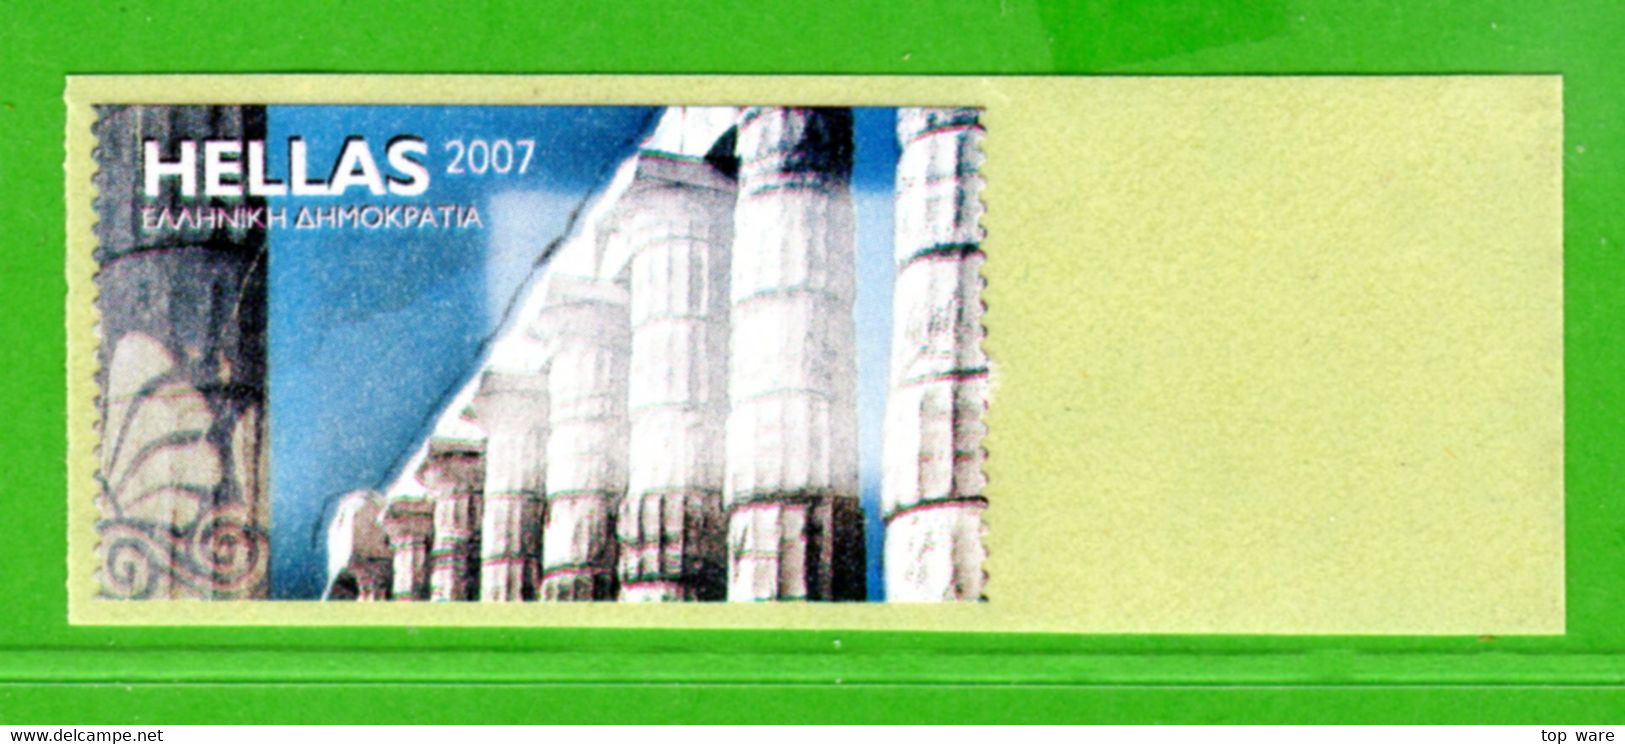 Greece Griechenland HELLAS ATM 23 Temple Colums * Blank Label * Frama Etiquetas Automatenmarken Primtec HERMES - Vignette [ATM]